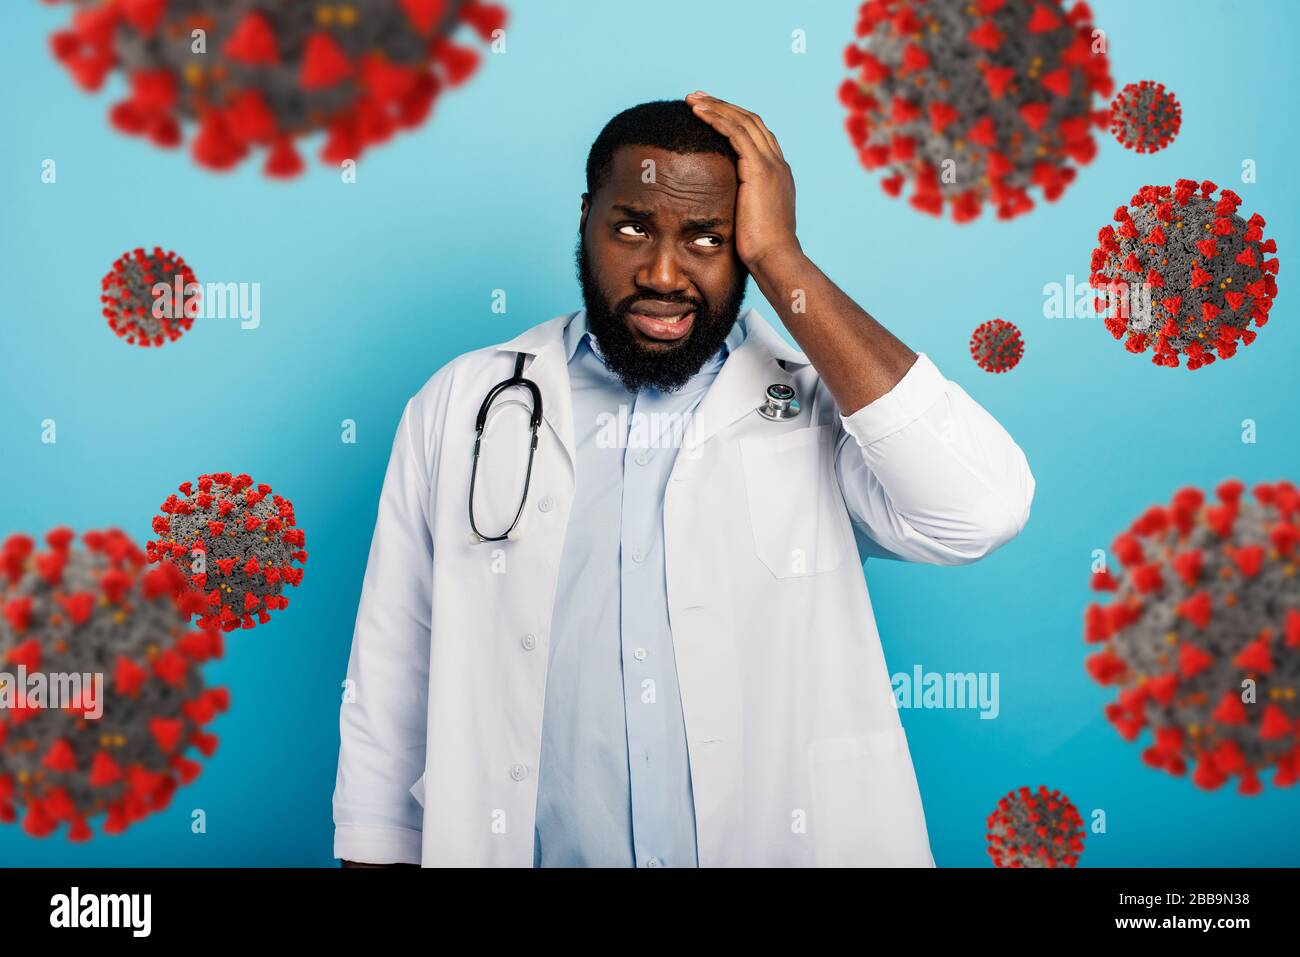 Erschrockene Gesichtsausdruck des Arztes aufgrund einer Coronavirus-Pandemie. Blauer Hintergrund Stockfoto